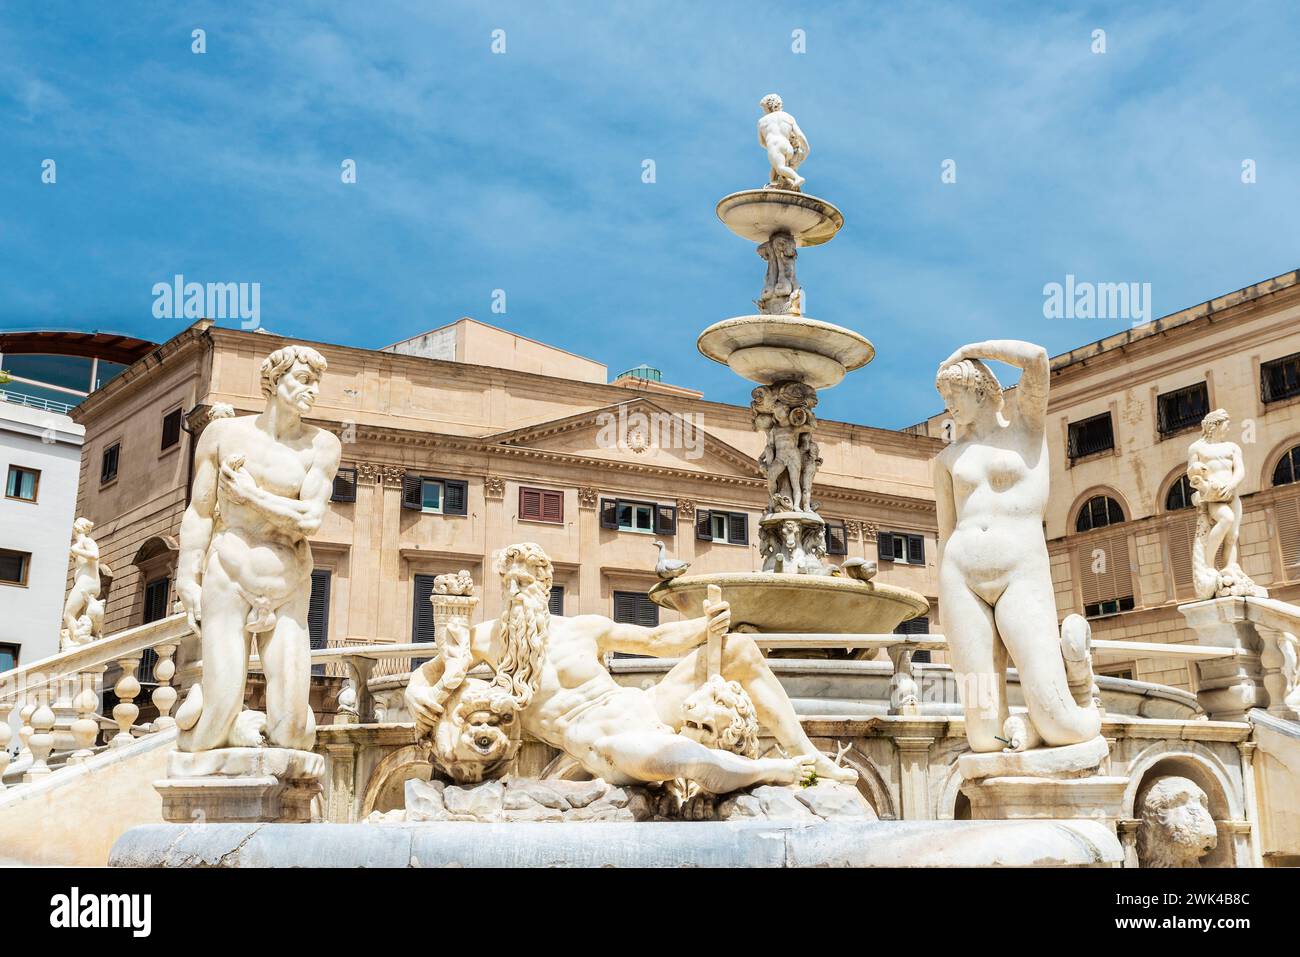 La Fontaine prétorienne ou Fontana Pretoria, est une fontaine monumentale qui représente les douze Olympiens dans la vieille ville de Palerme, Sicile, Italie Banque D'Images